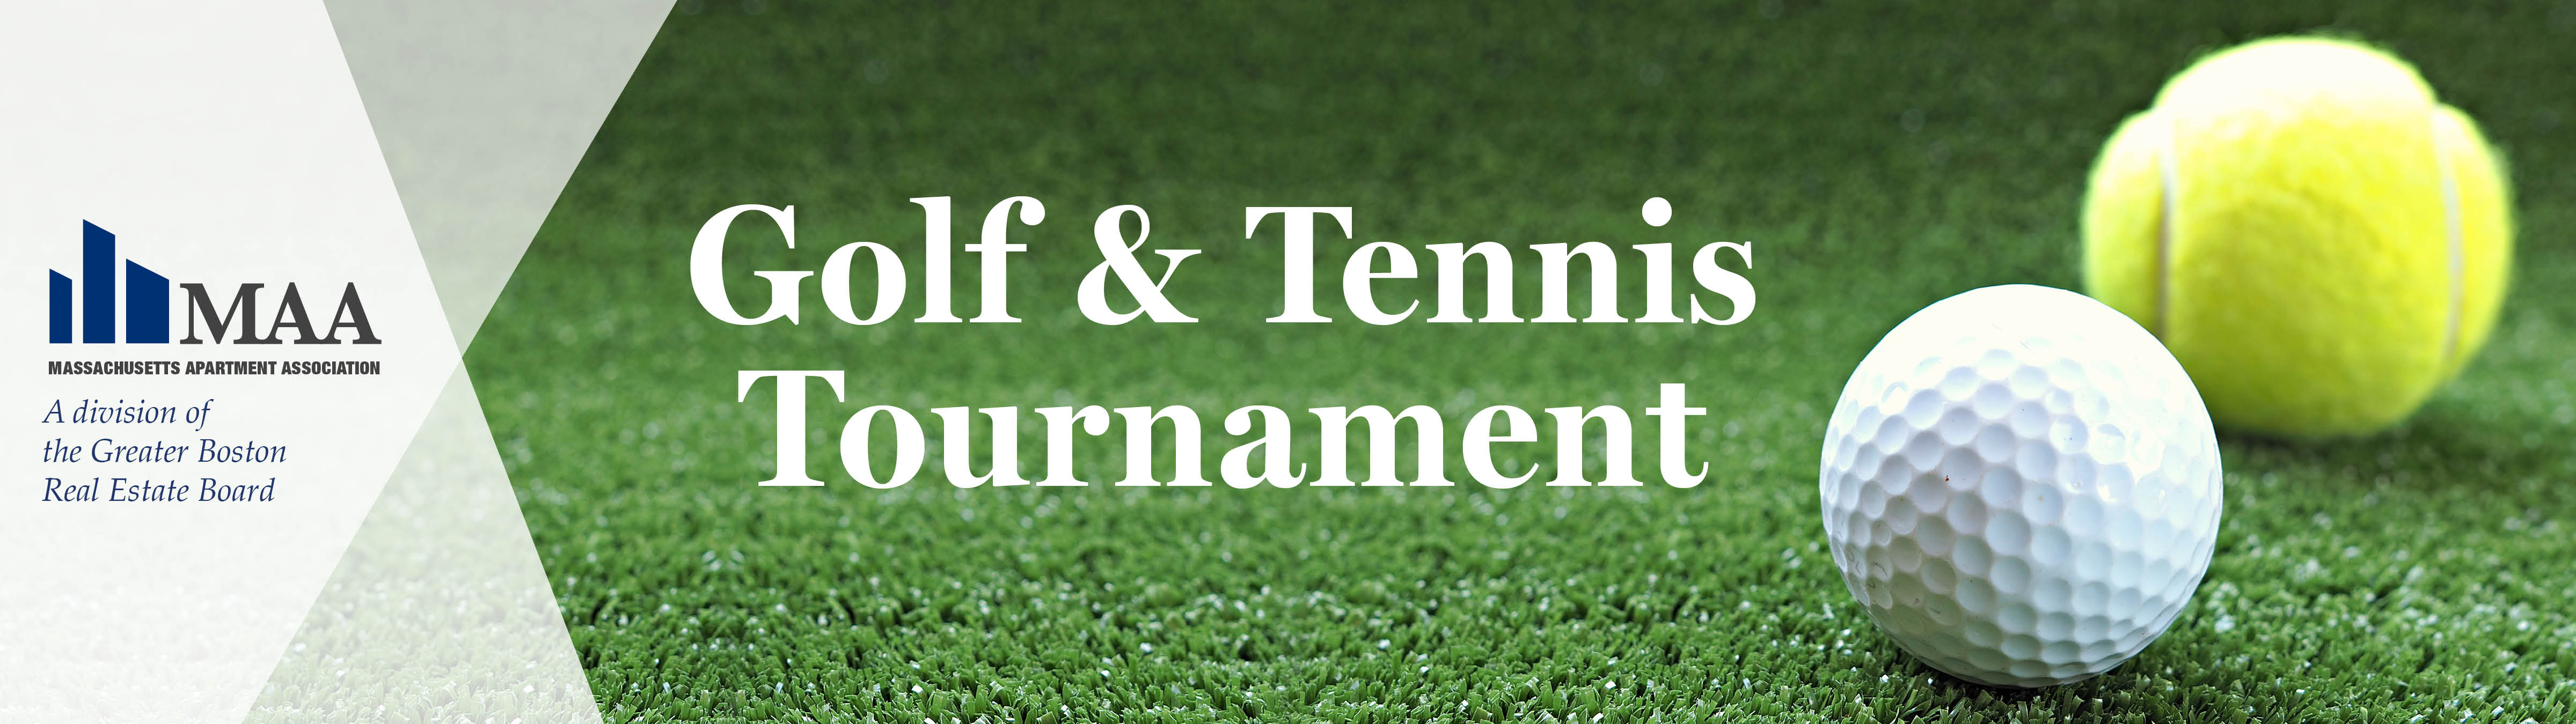 MAA Golf & Tennis Tournament